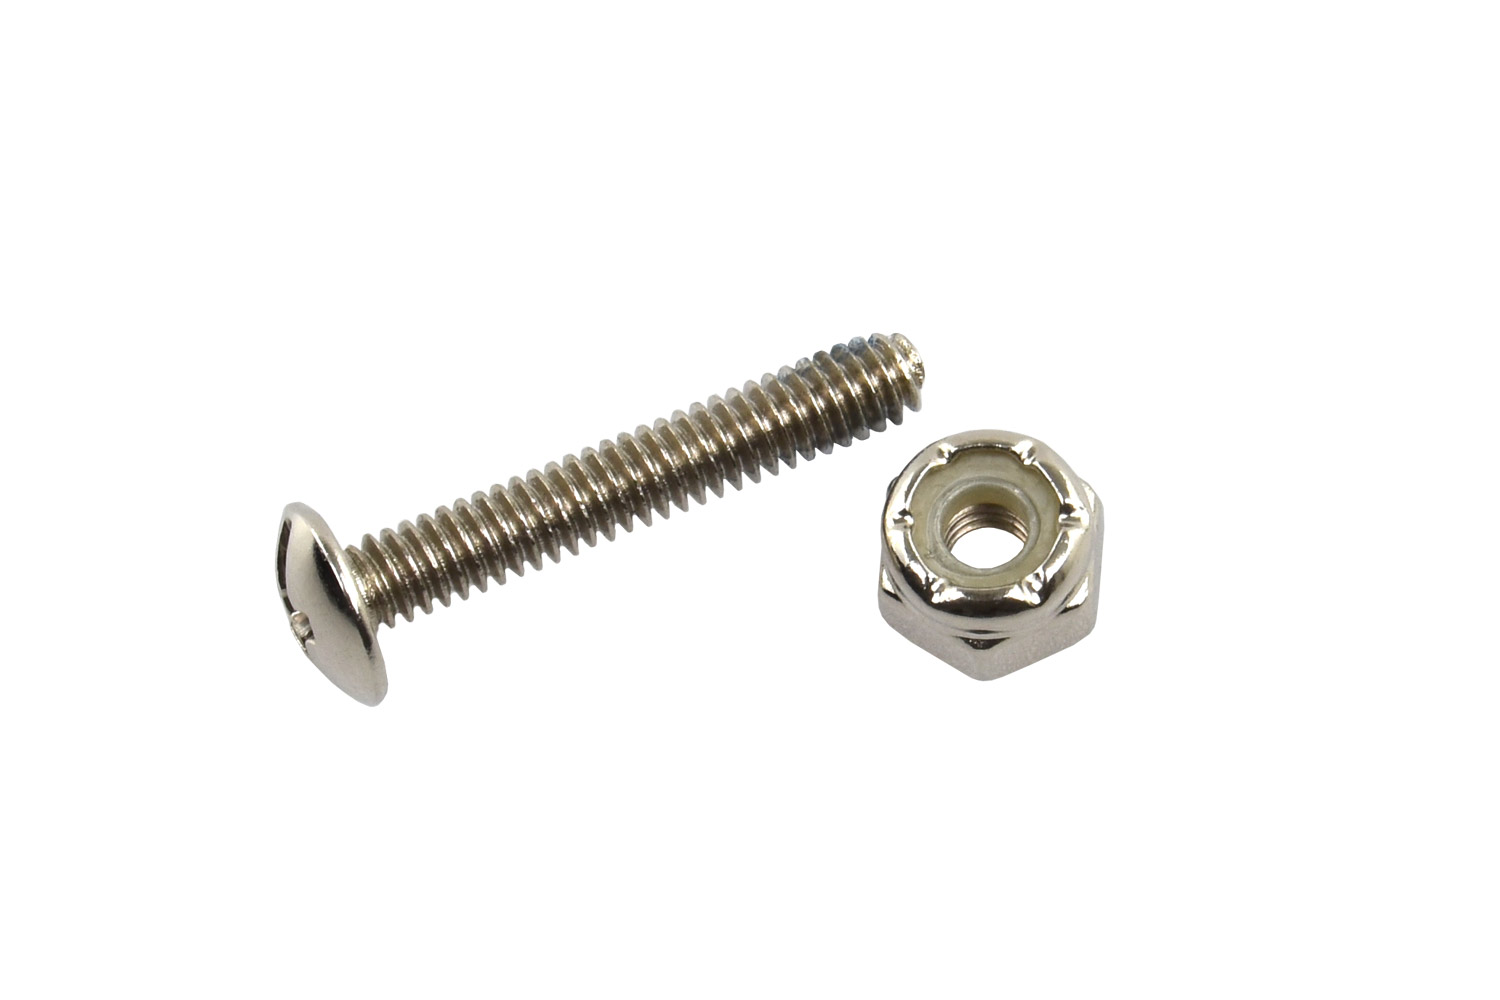 Universal kicker screw for 13mm kicker rod (22 pcs., incl. nuts)